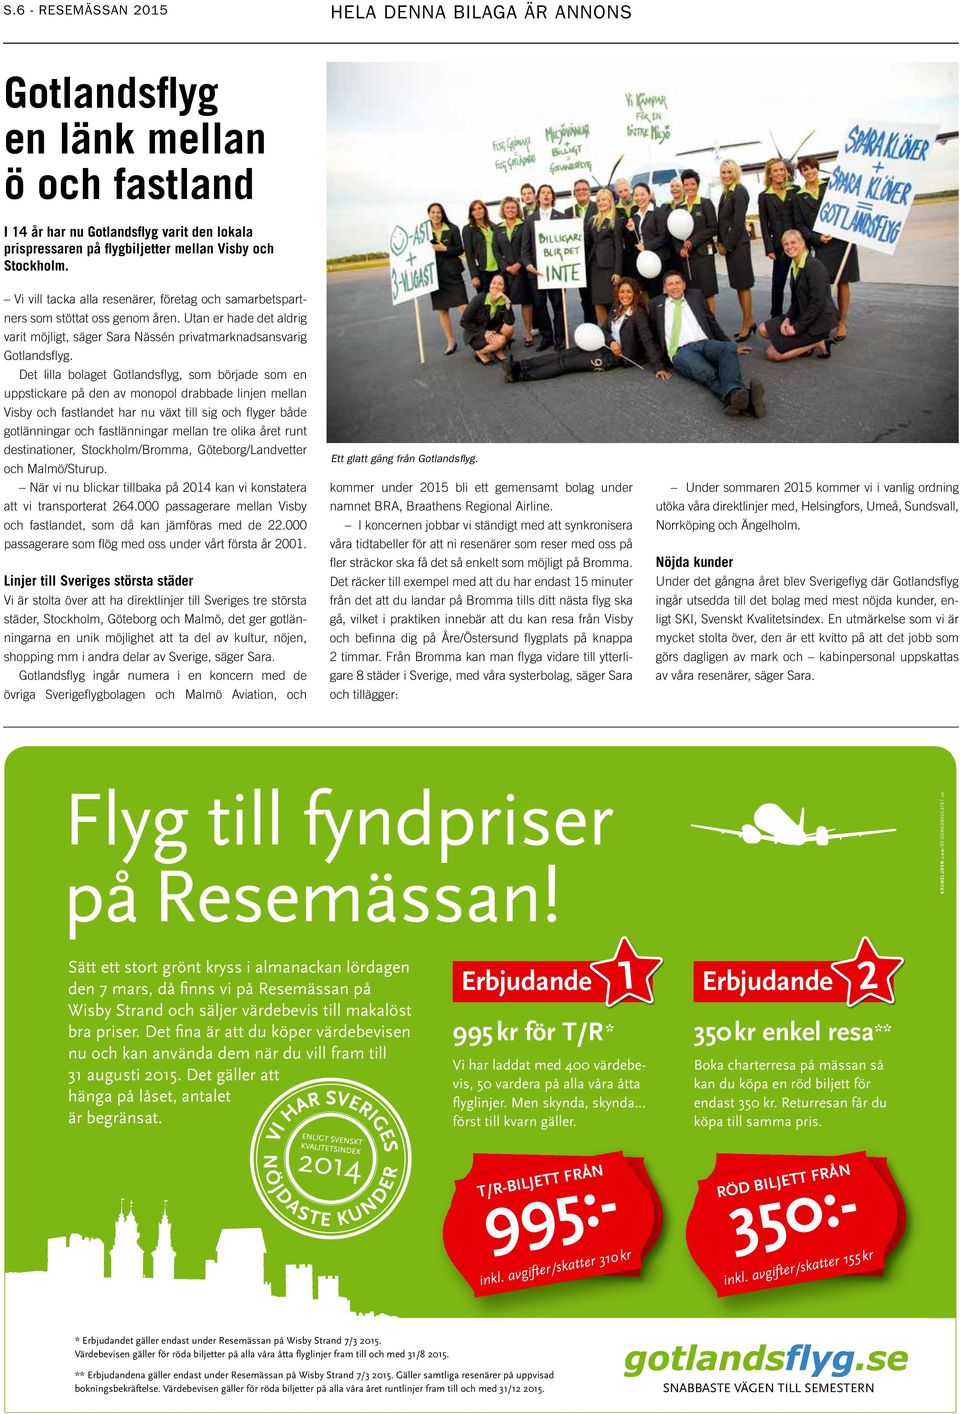 Det lilla bolaget Gotlandsflyg, som började som en uppstickare på den av monopol drabbade linjen mellan Visby och fastlandet har nu växt till sig och flyger både gotlänningar och fastlänningar mellan